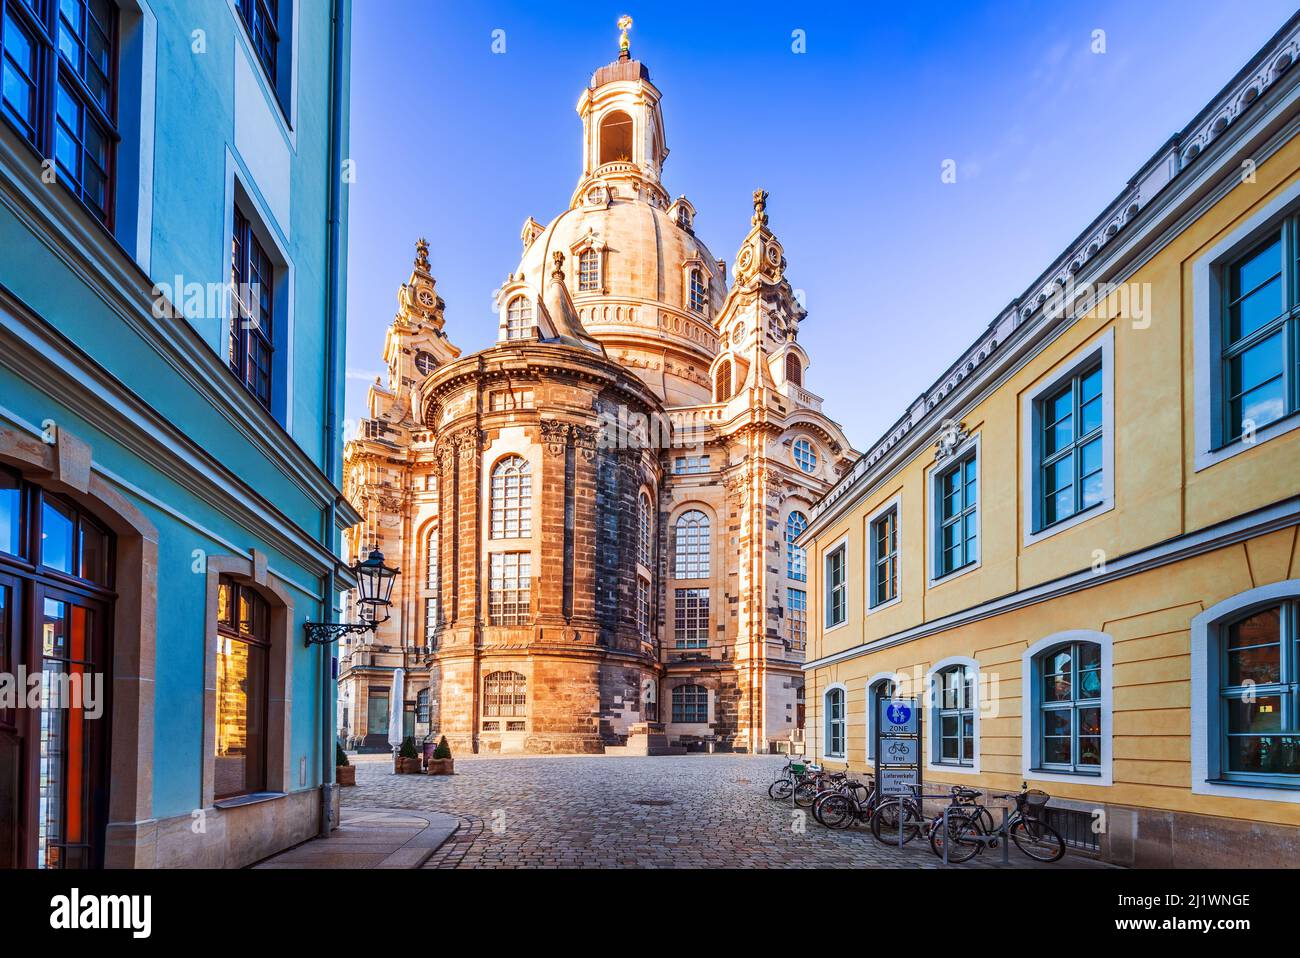 Dresden, Deutschland. Frauenkirche in der antiken Stadt Dresda, historisches und kulturelles Zentrum des Freistaates Sachsen in Europa. Stockfoto